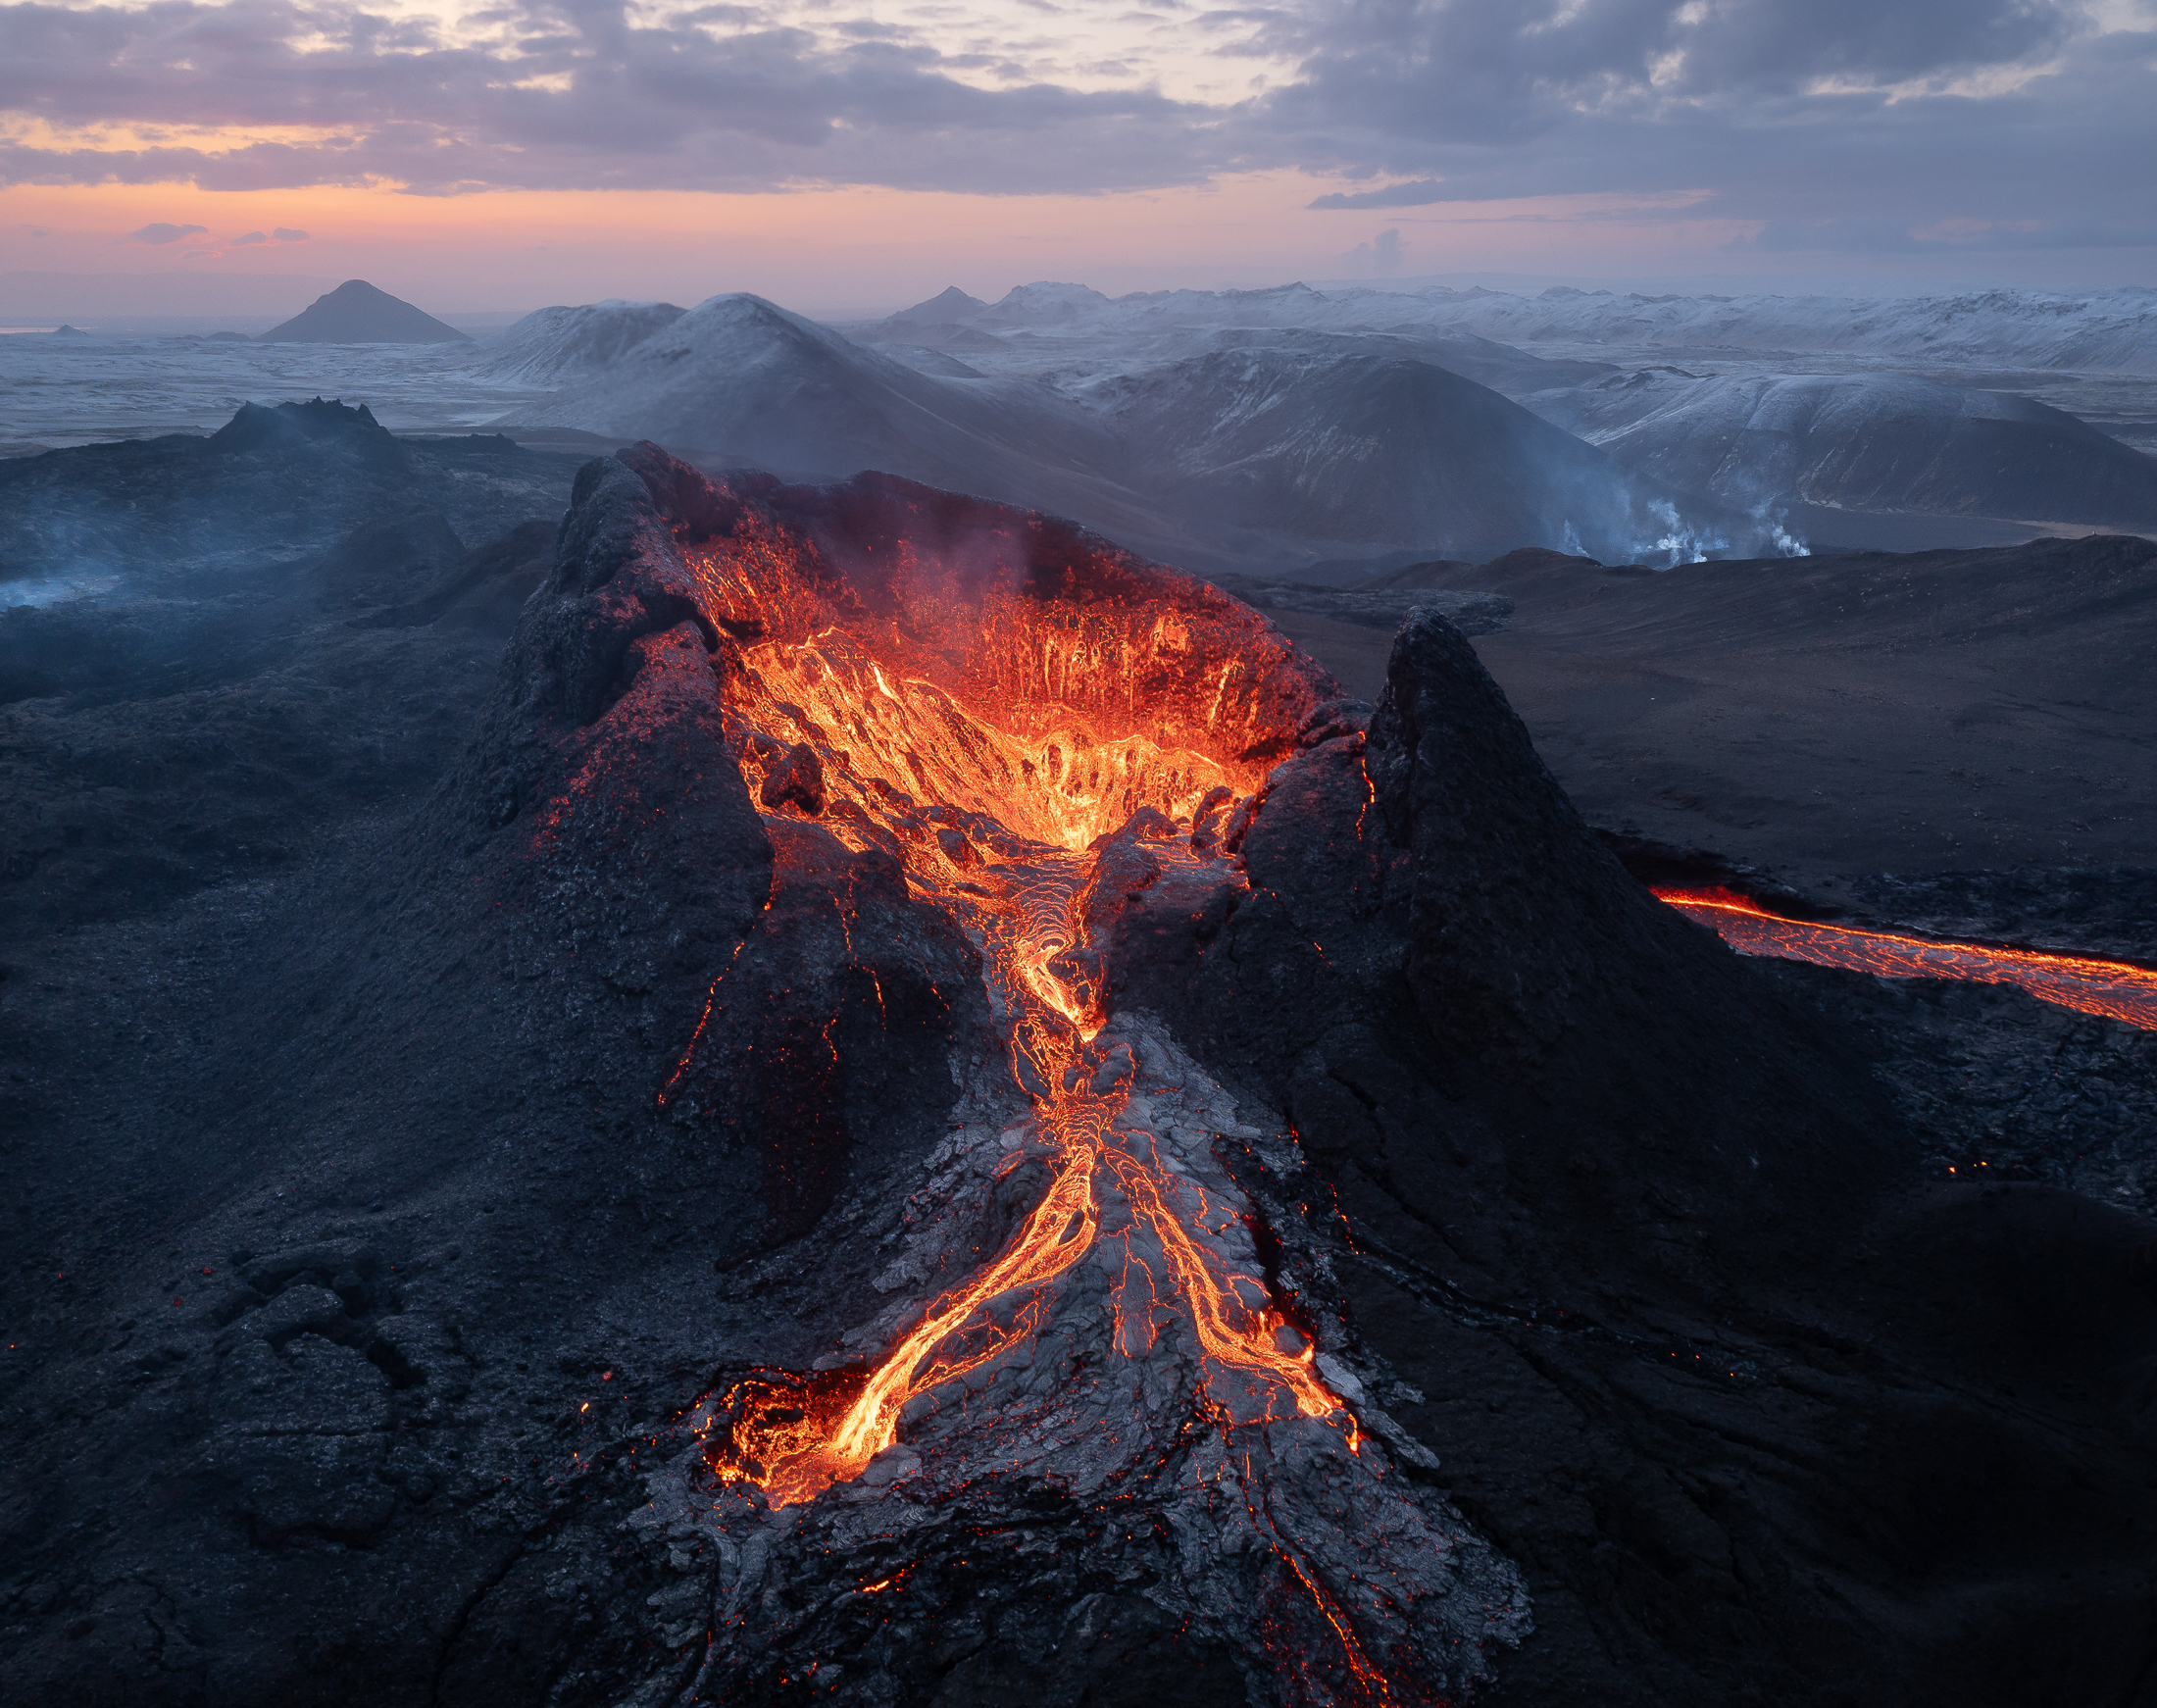 Der Vulkan war vor seinem Ausbruch vor zwei Jahren über 800 Jahre lang inaktiv